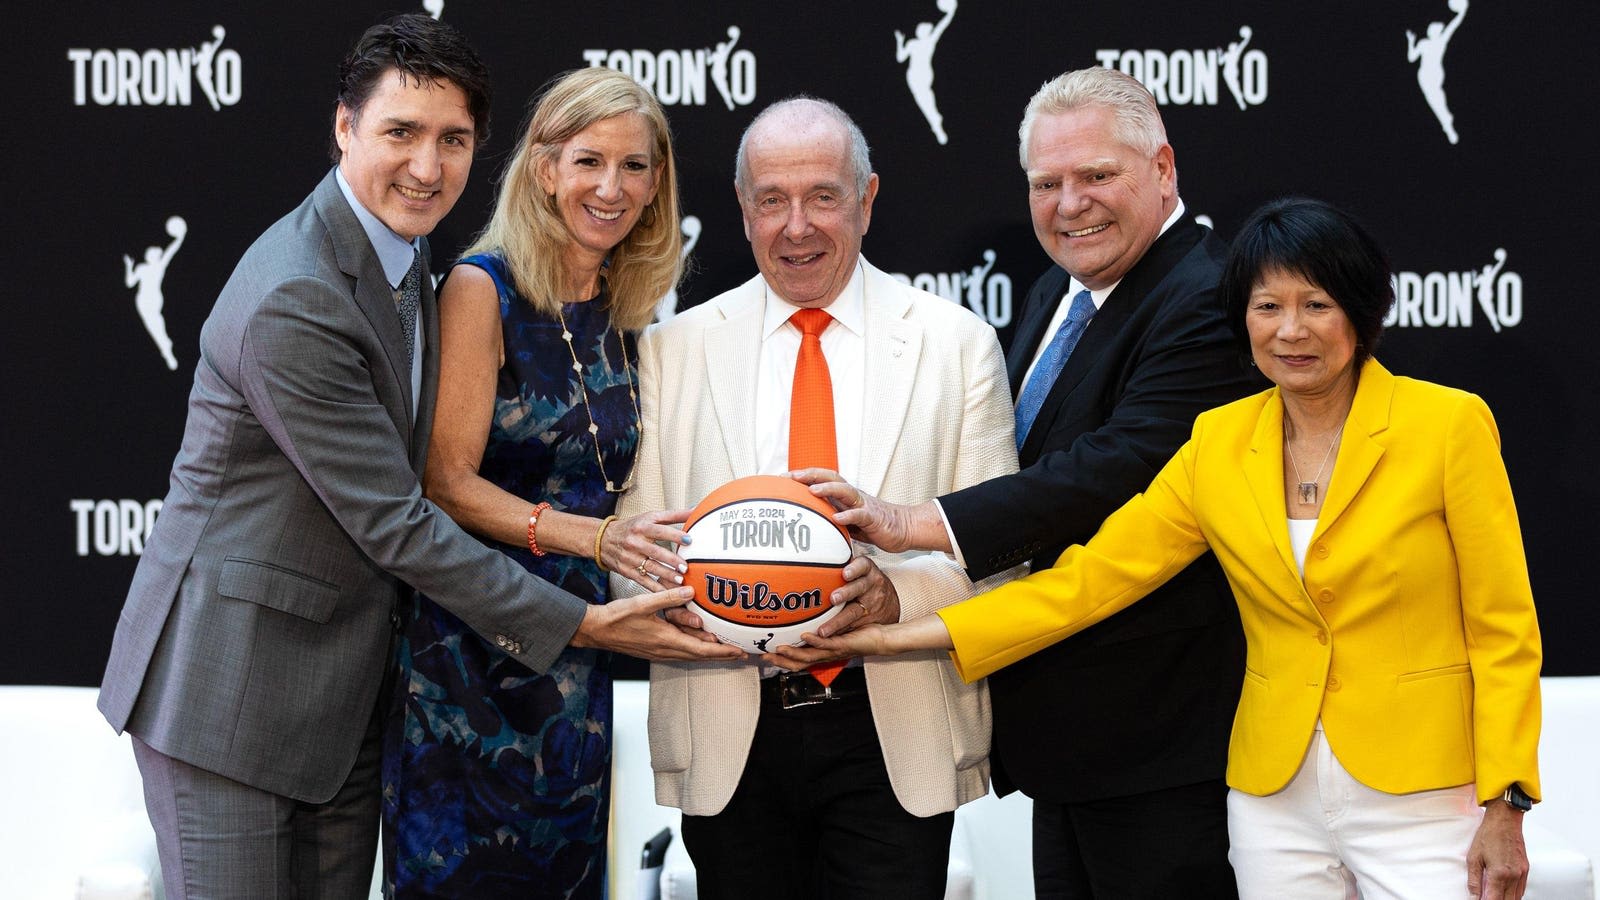 WNBA Expanding Internationally To Toronto As Viewership Climbs